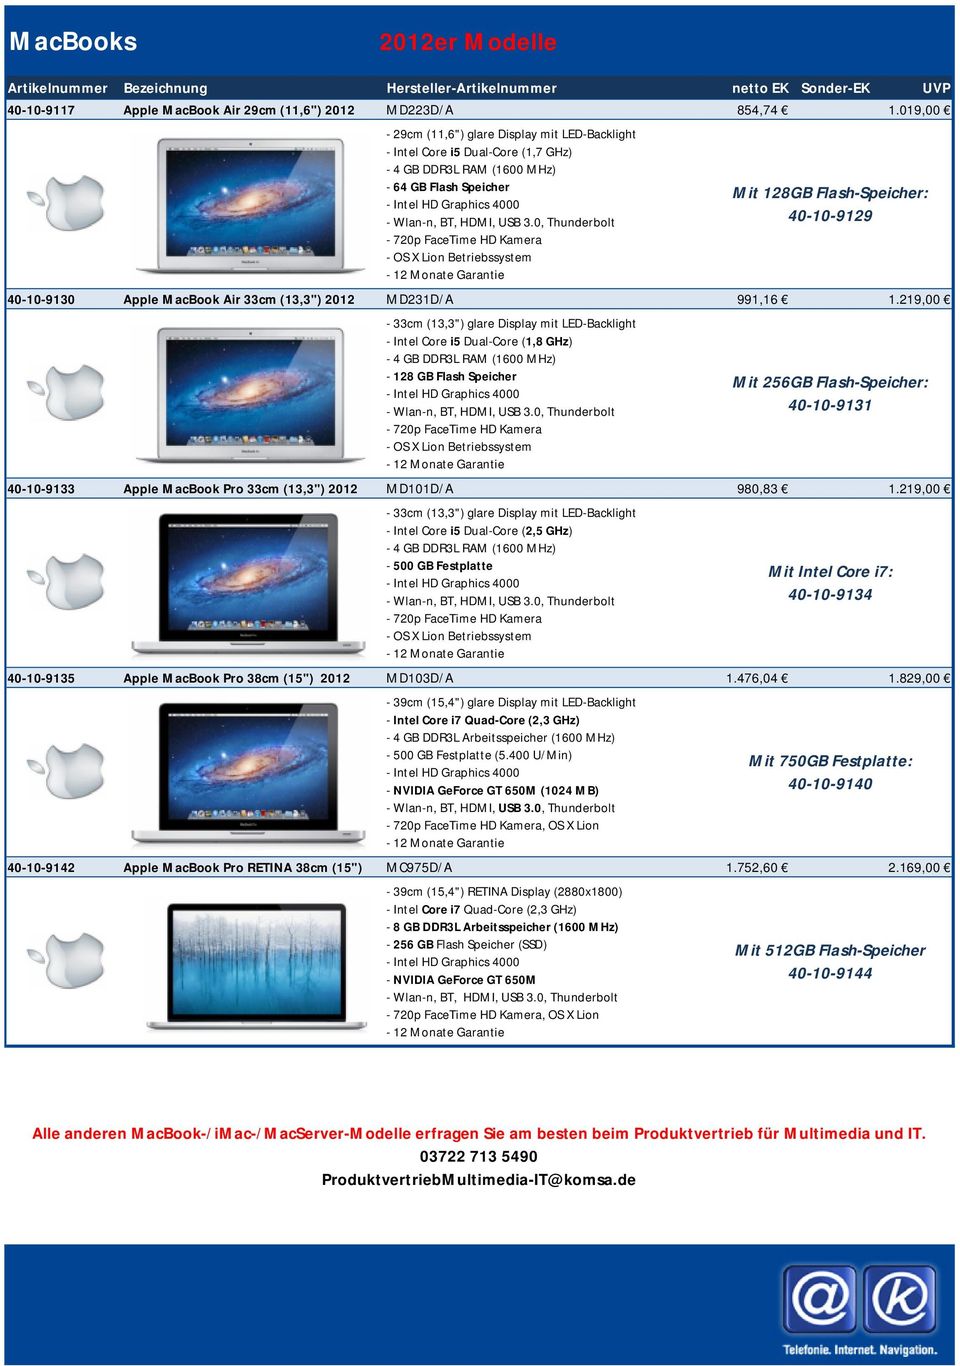 0, Thunderbolt - 720p FaceTime HD Kamera - OS X Lion Betriebssystem - 12 Monate Garantie 40-10-9130 Apple MacBook Air 33cm (13,3") 2012 MD231D/A 991,16 1.